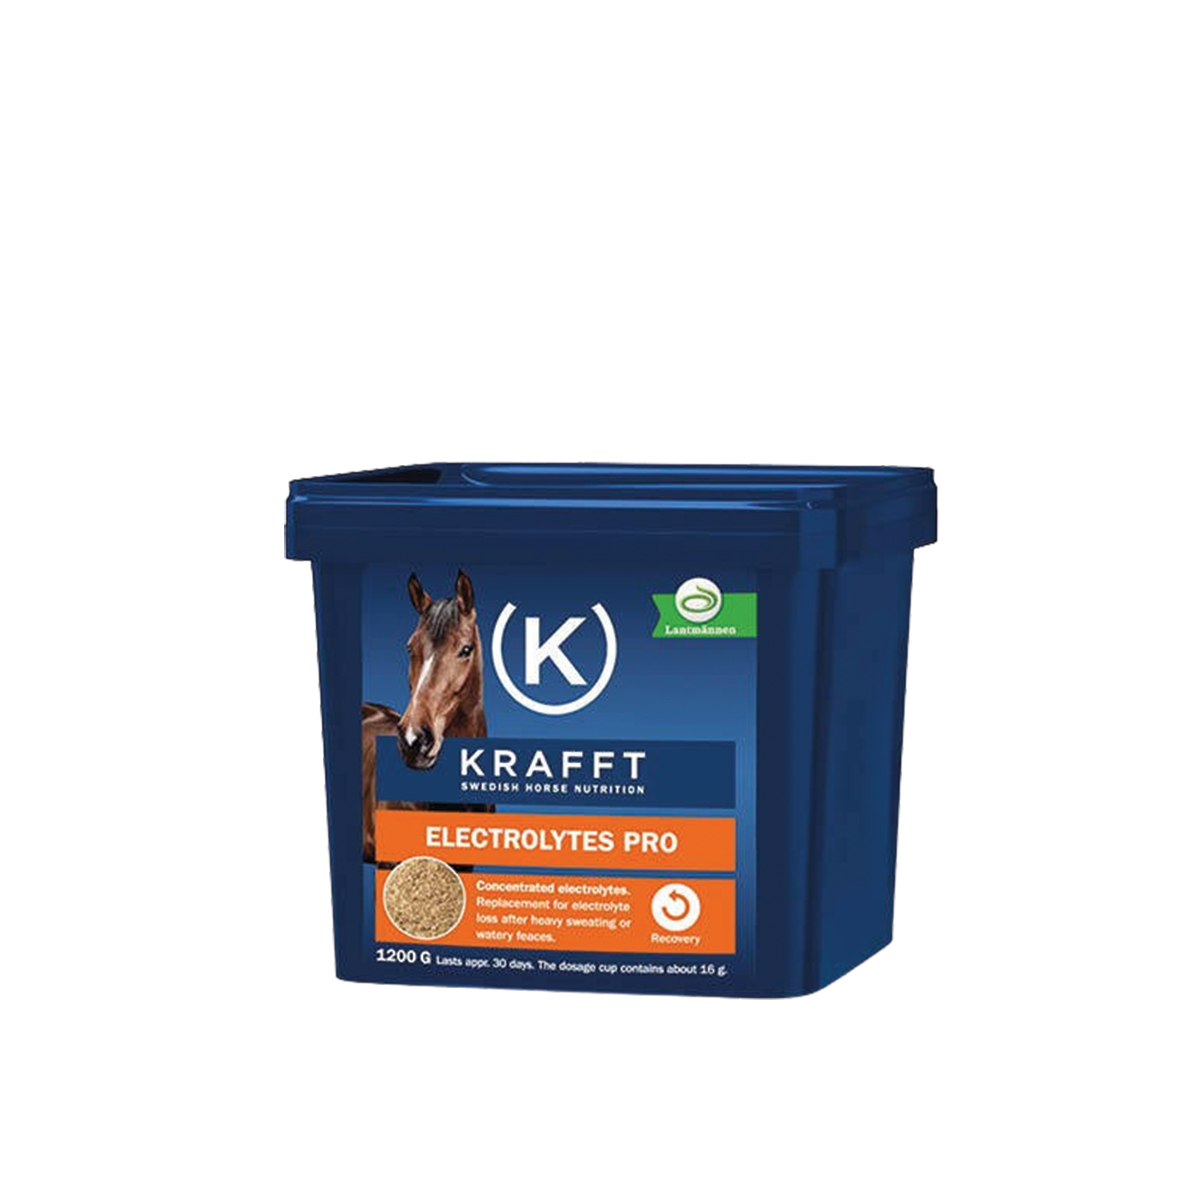 KRAFFT Electrolytes Pro 1,2kg